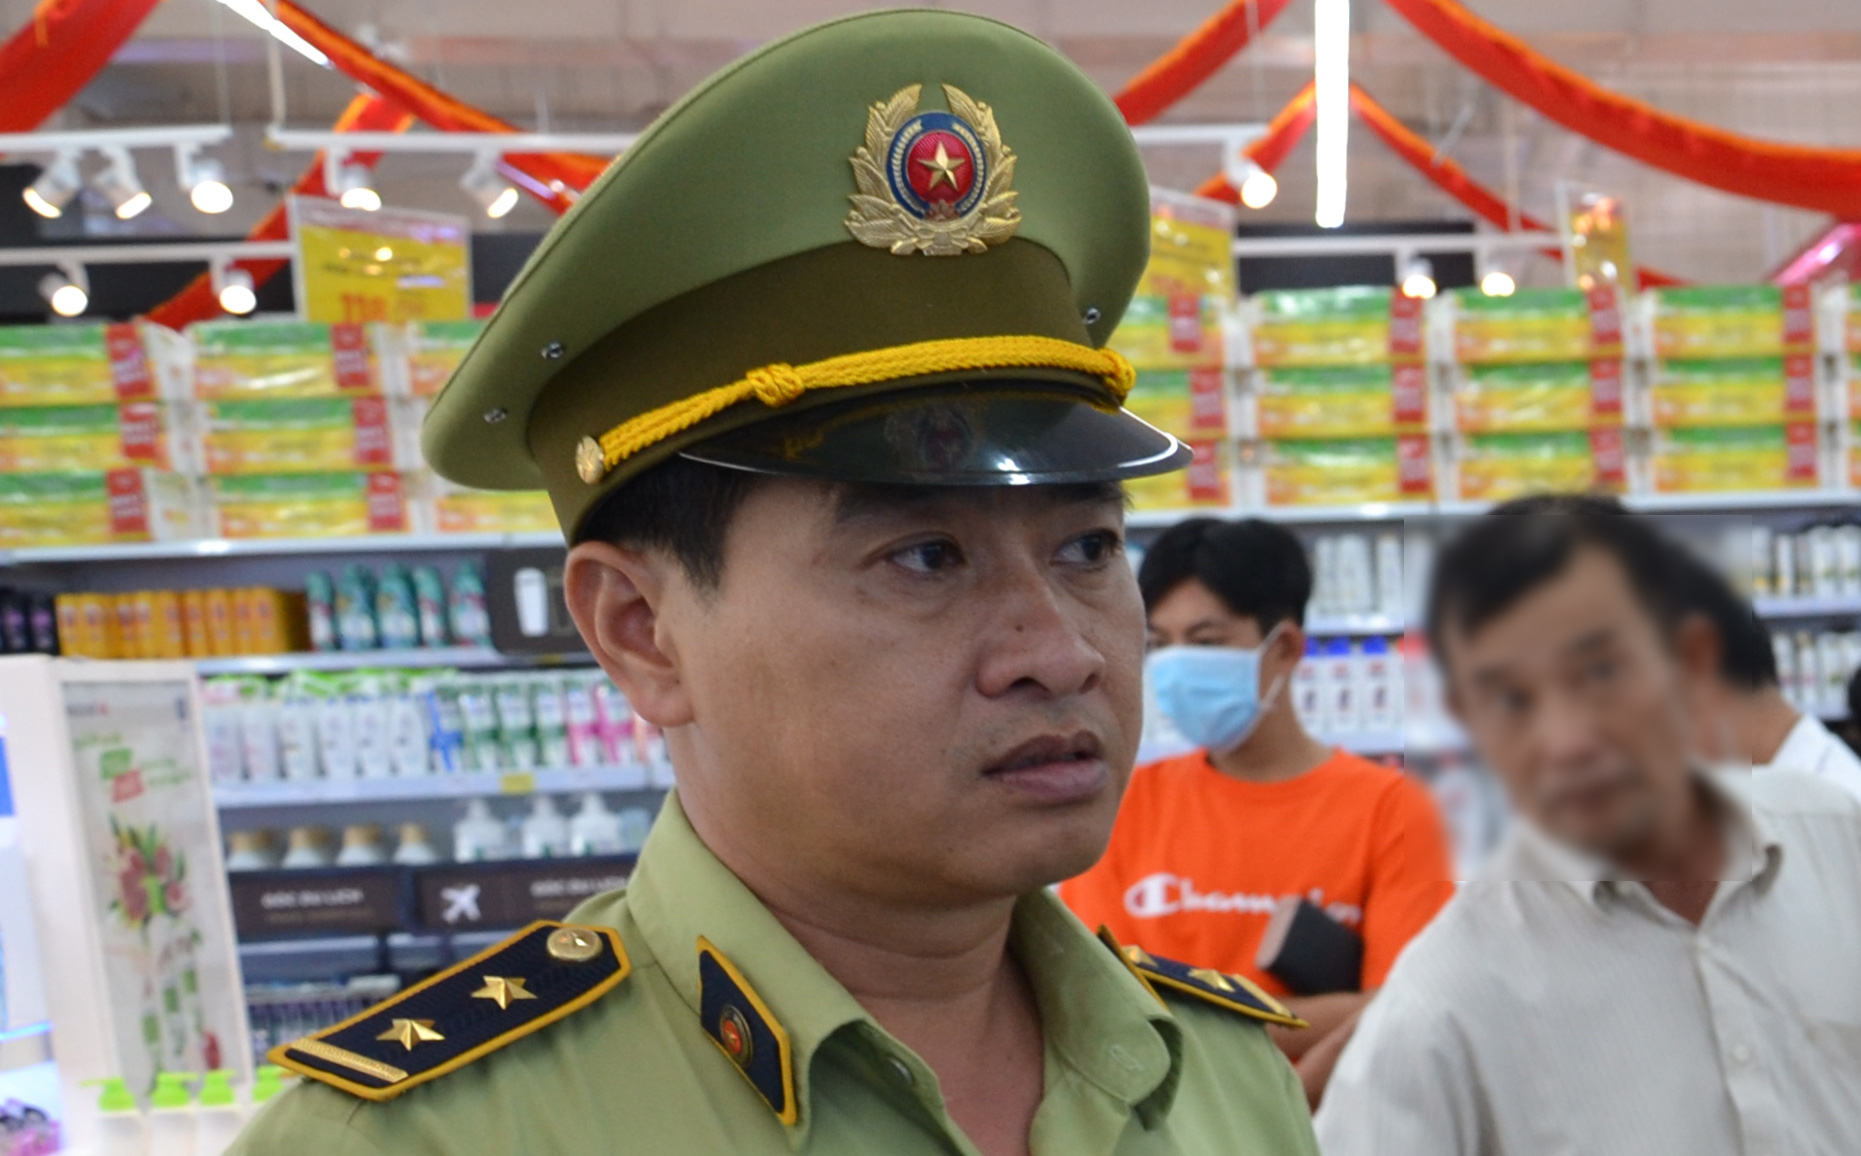 Đội trưởng Quản lý thị trường ở Tiền Giang quan hệ bất chính với vợ người khác trong thời gian dài